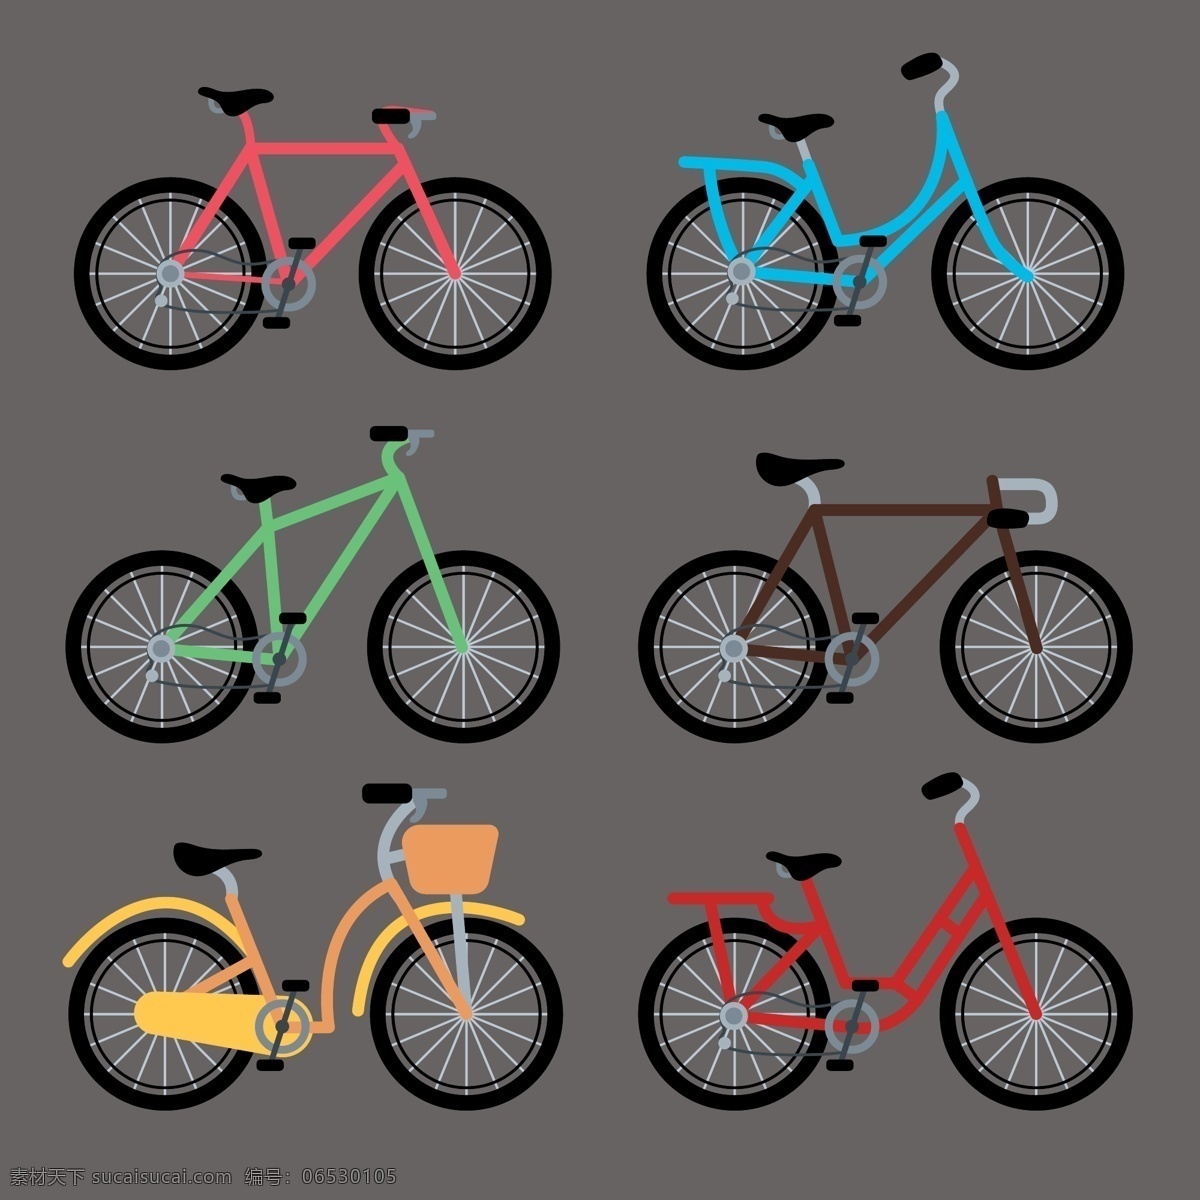 卡通自行车 自行车 卡通车 卡通矢量图 设计素材 现代科技 交通工具